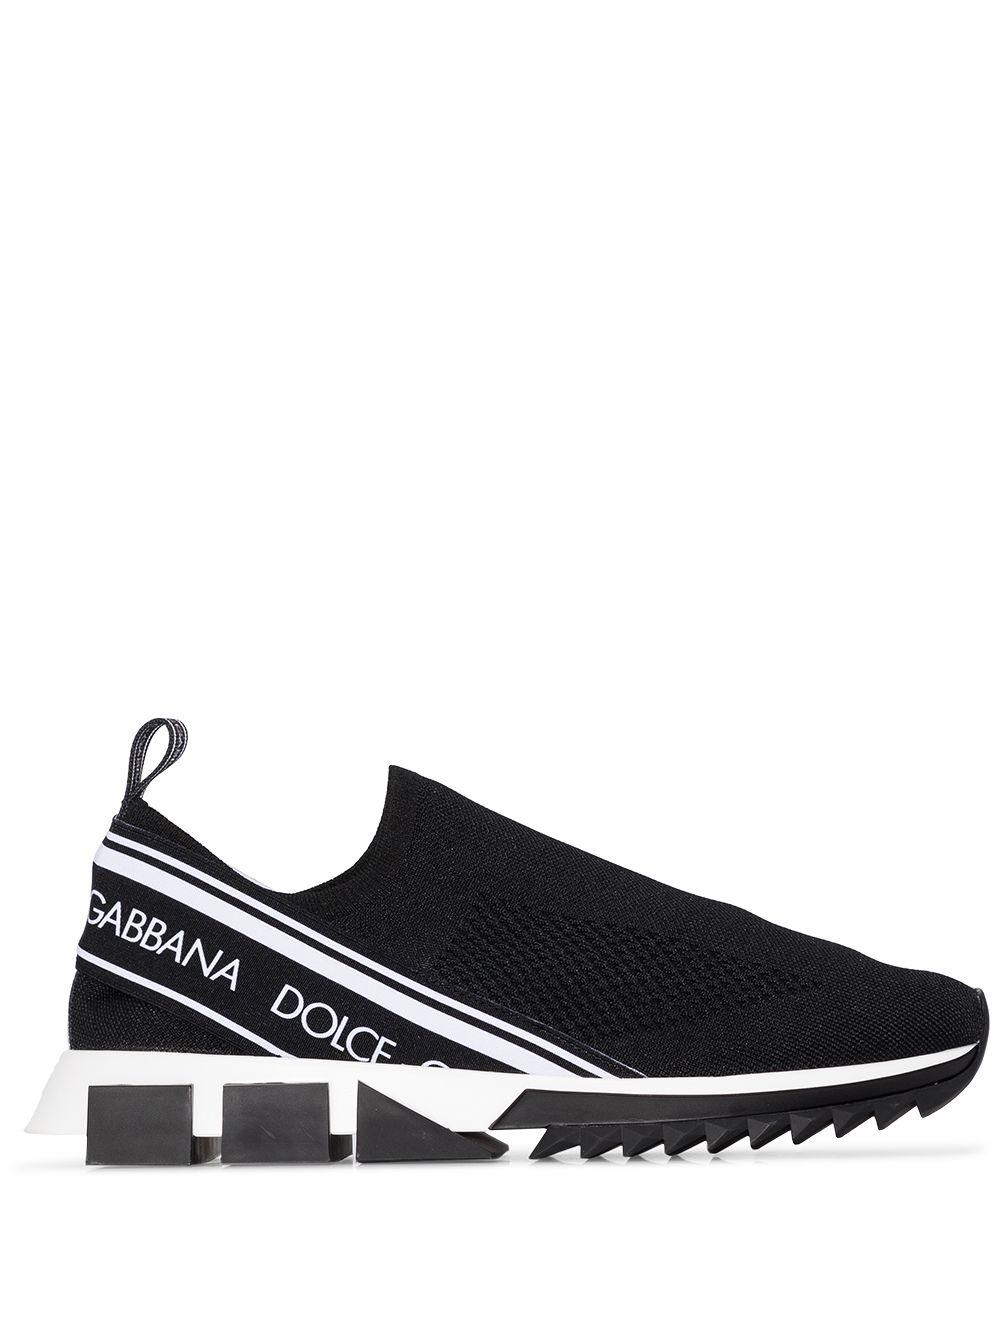 Dolce & Gabbana Sorrento Runner Sneakers in Black for Men - Lyst